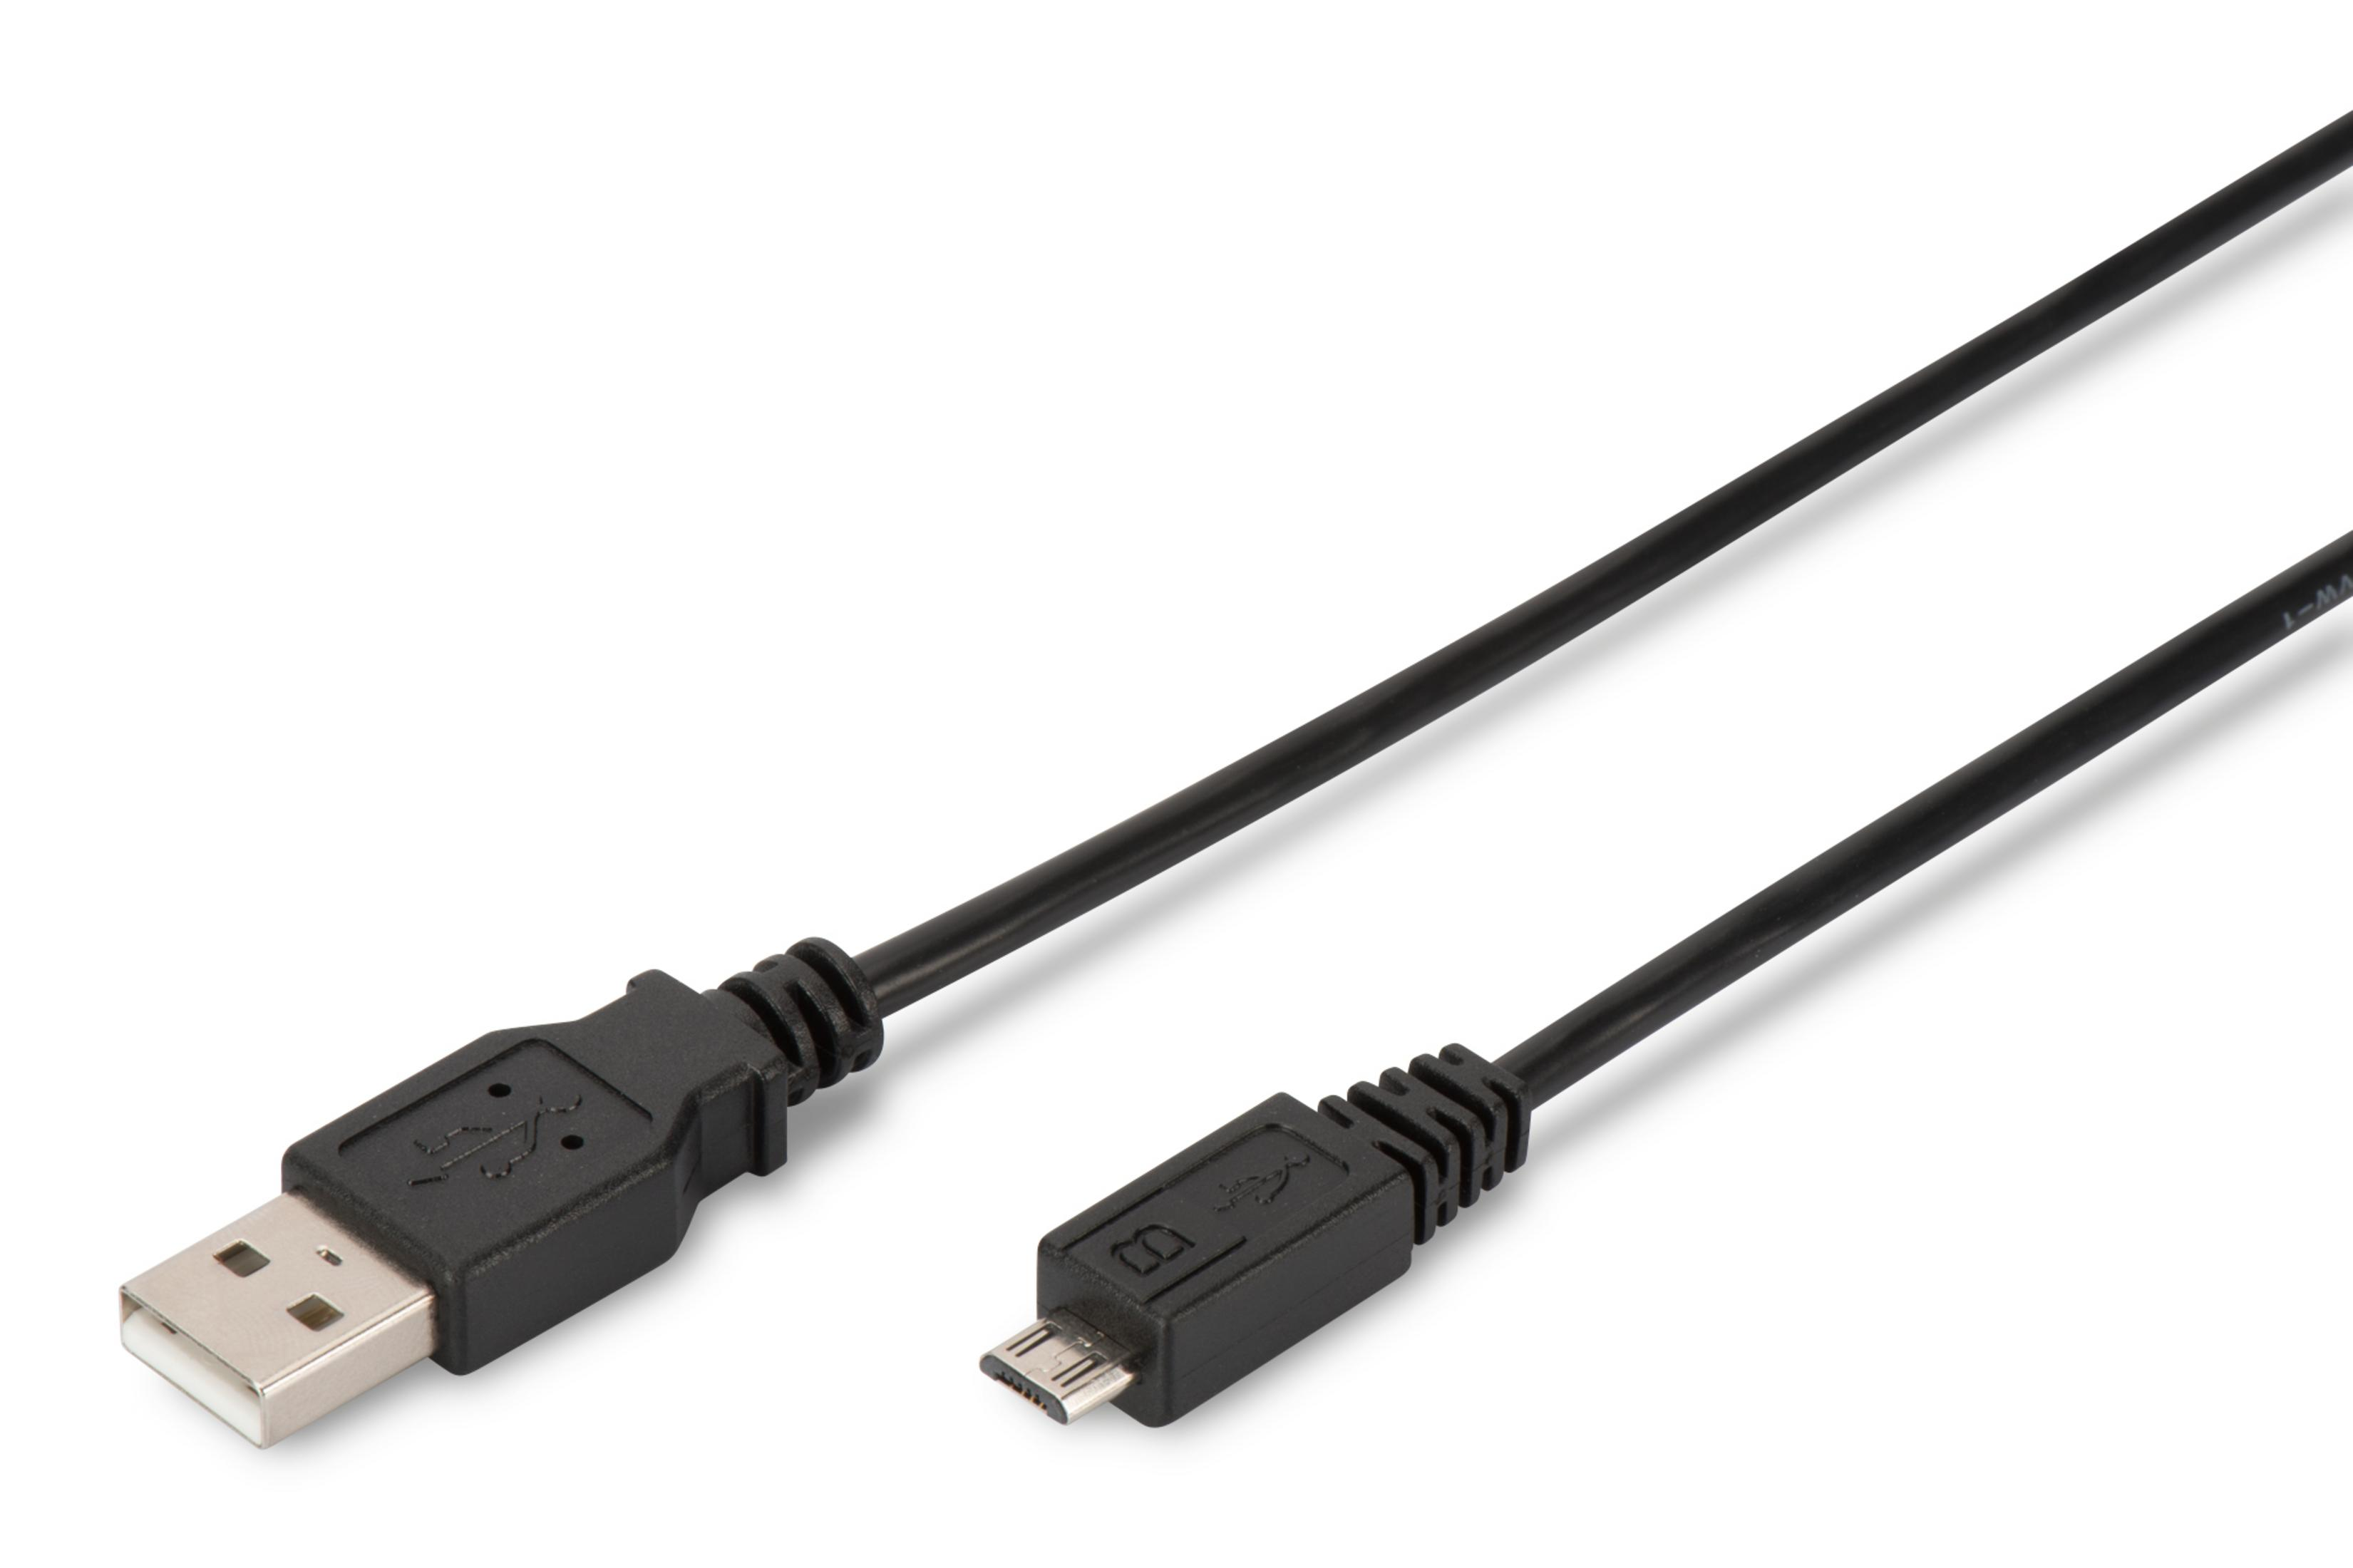 USB-Kabel AK-300110-018-S 2.0 USB DIGITUS ANSCHLUSSKABEL